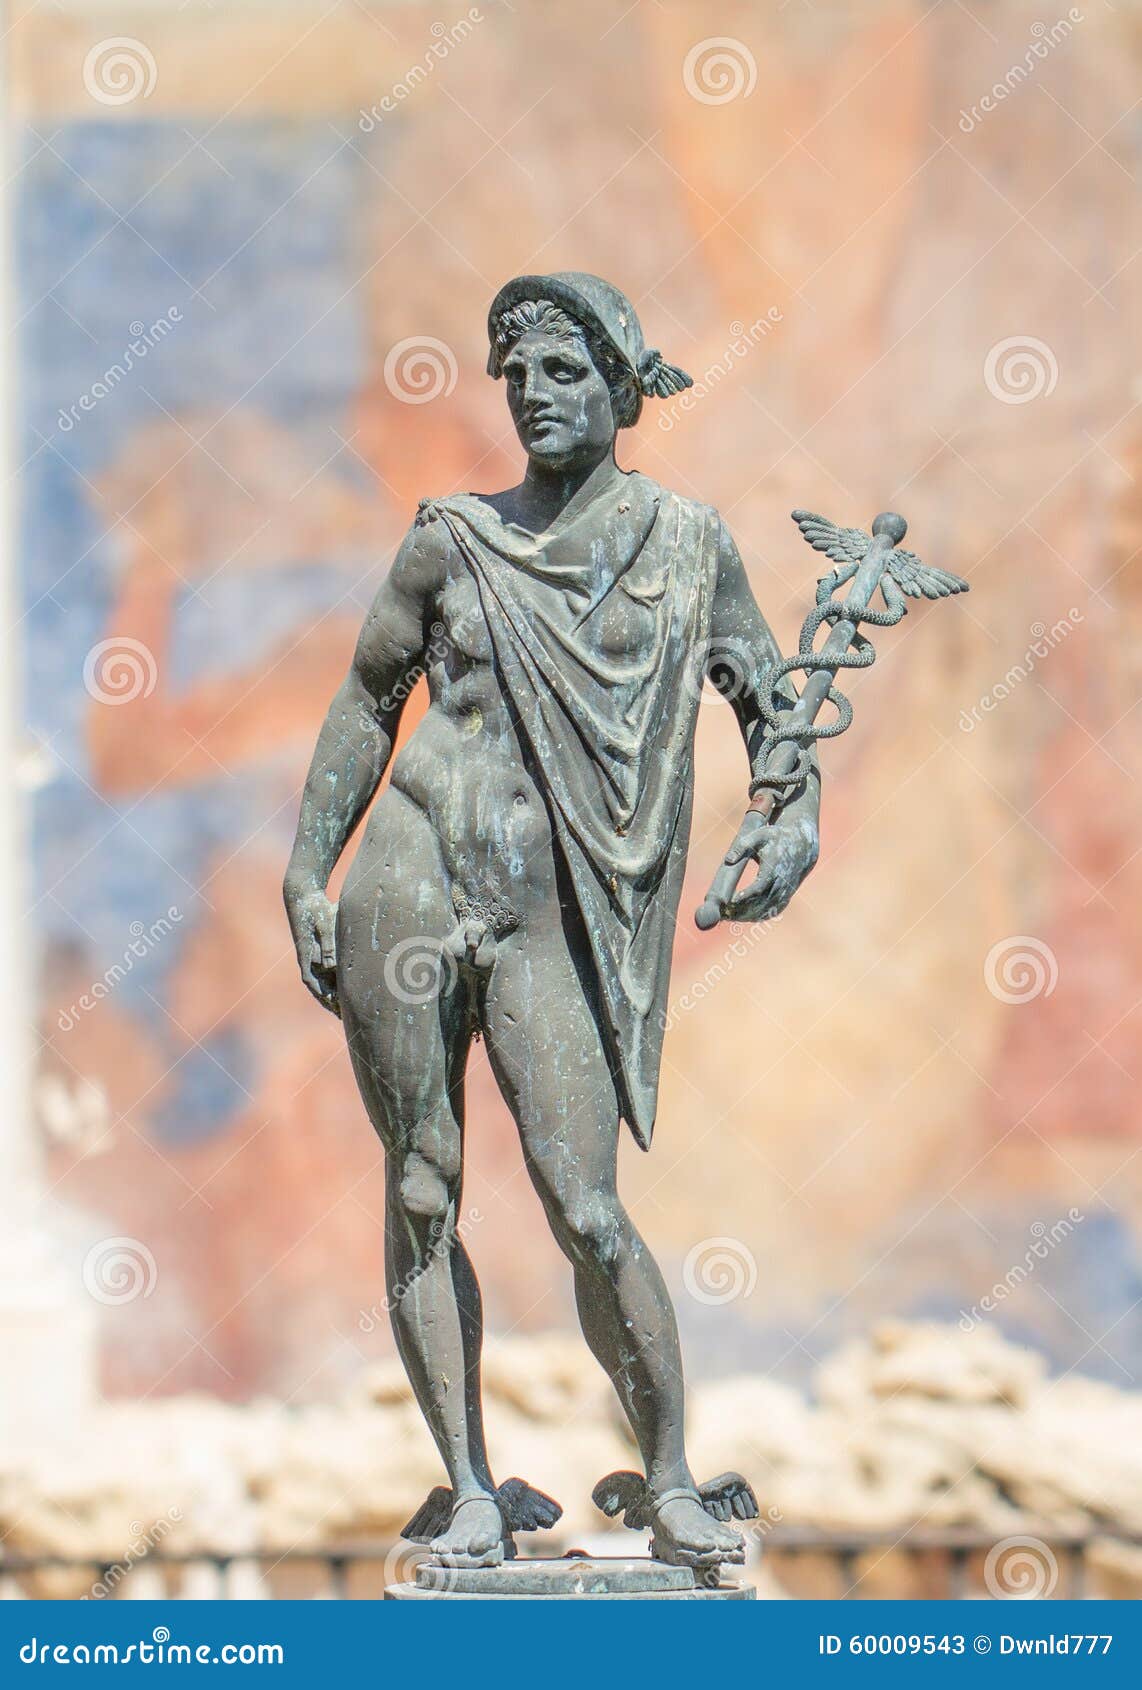 Gods hermes standbeeld stock afbeelding. Image of beeldhouwwerk - 60009543